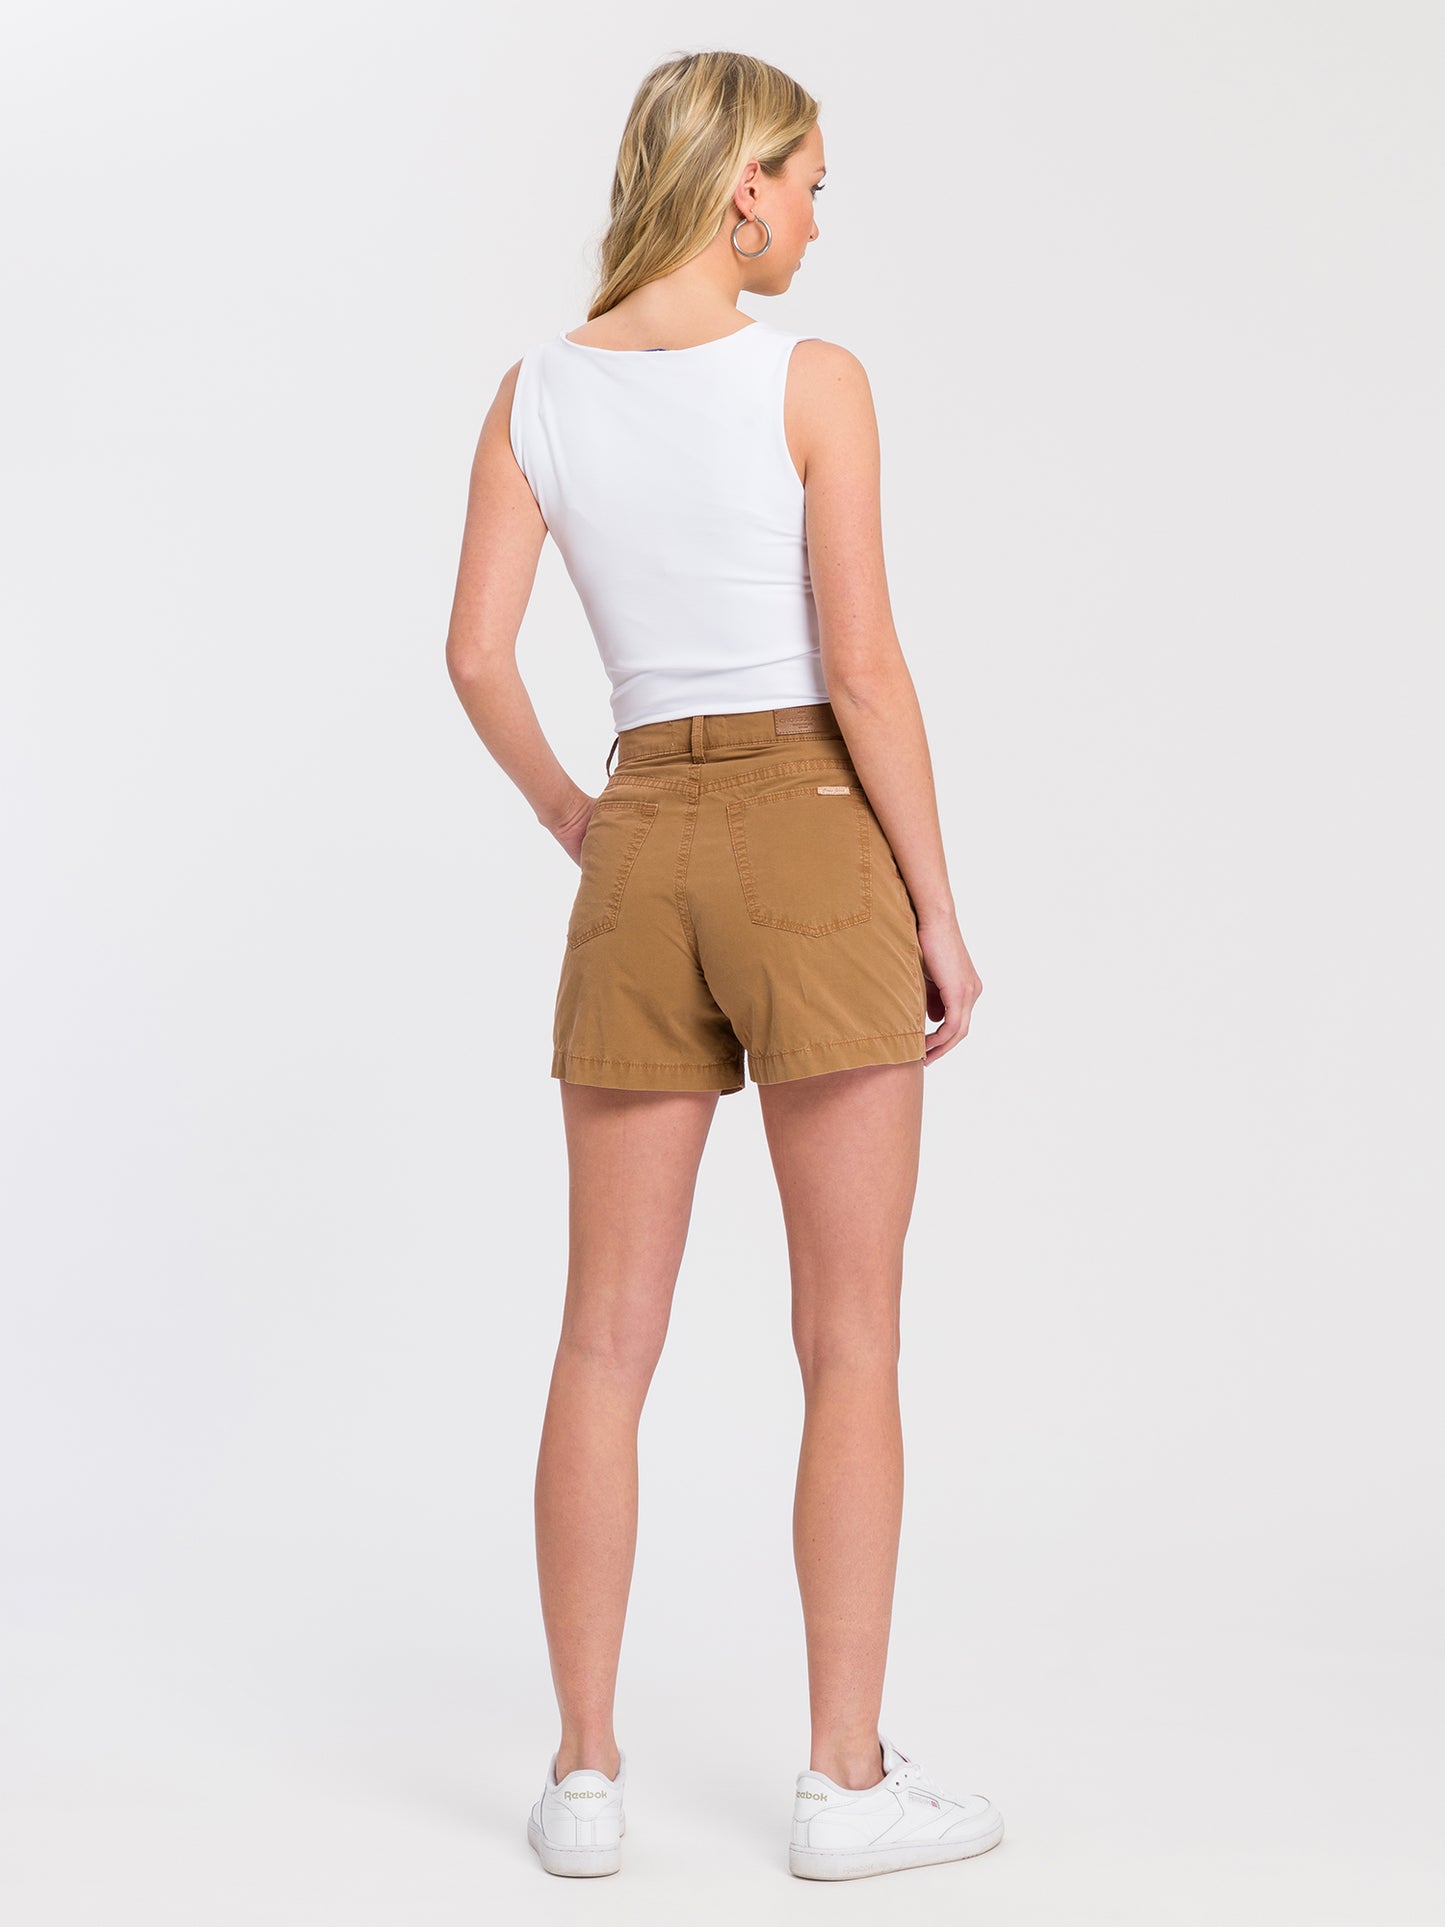 Women's chino shorts brown